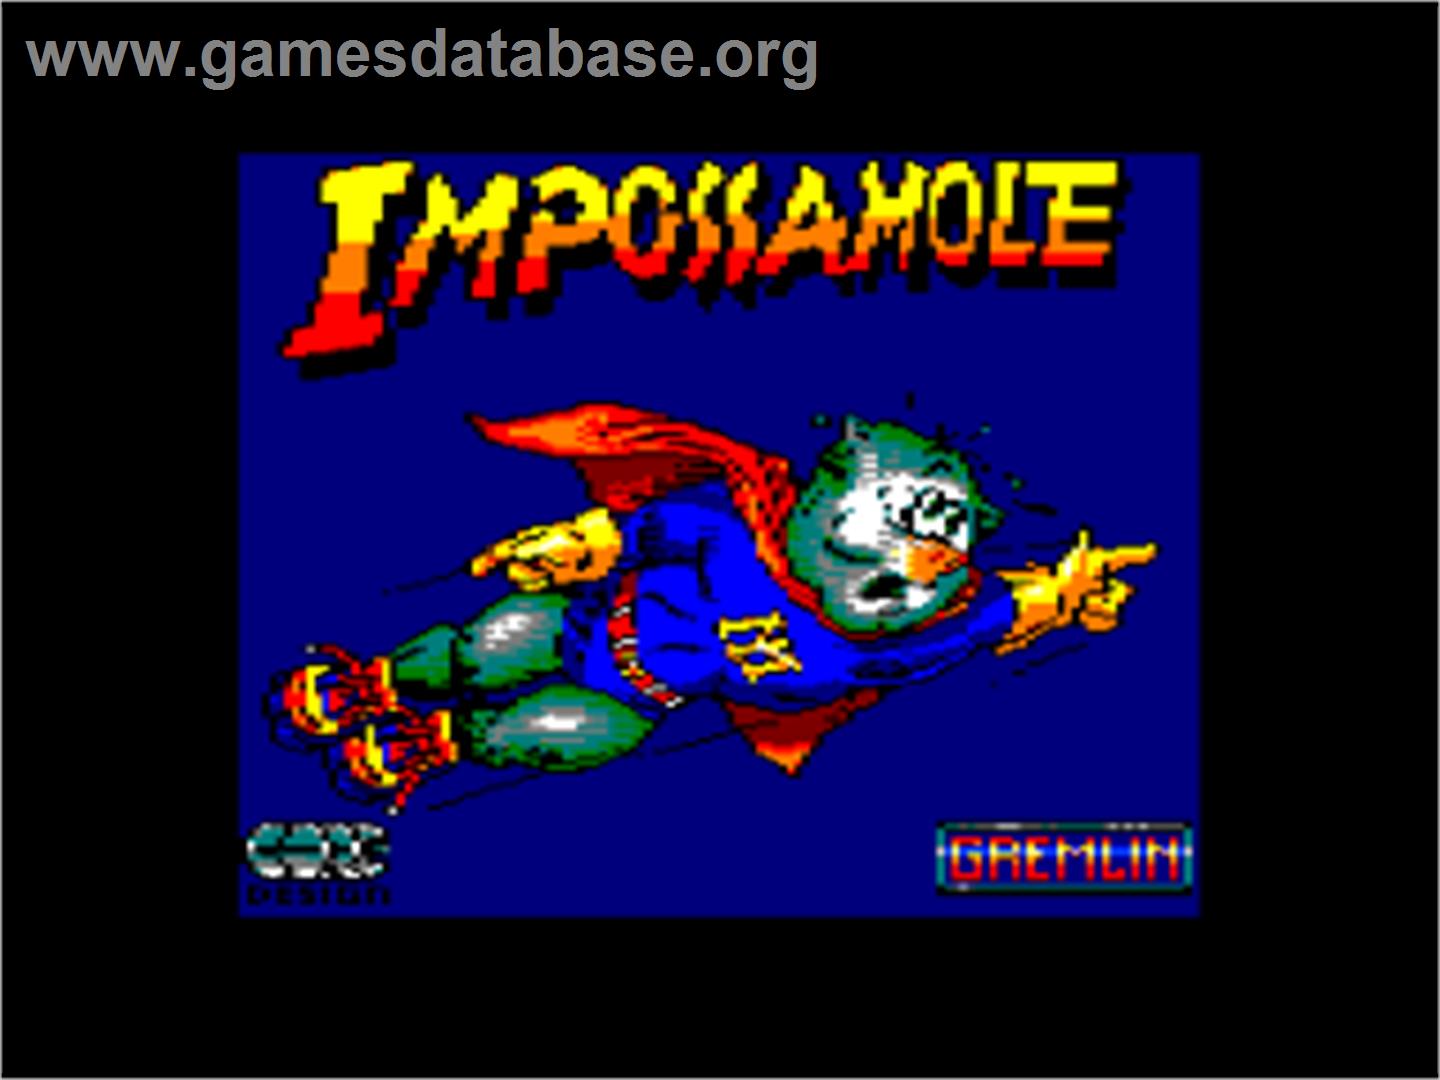 Impossamole - Amstrad CPC - Artwork - Title Screen